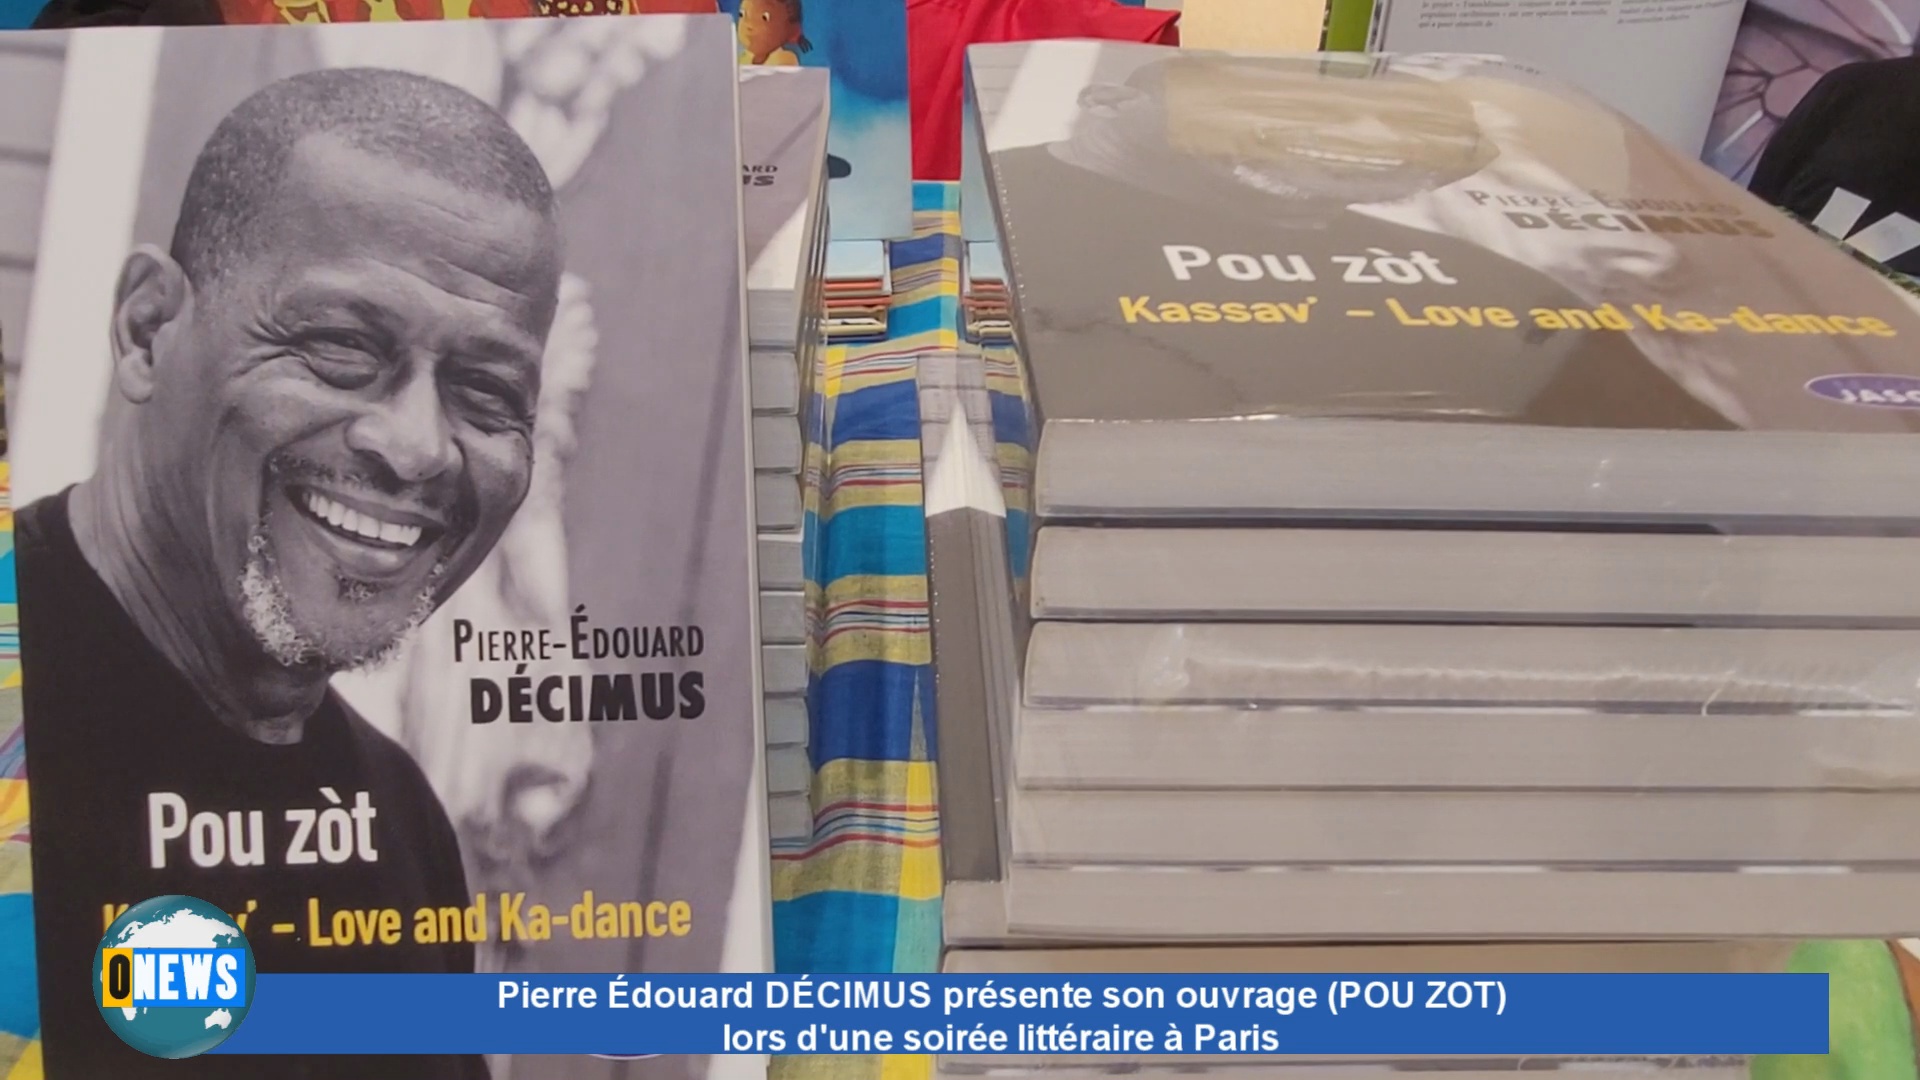 [Vidéo] Pierre Edouard DÉCIMUS lors de la présentation à Paris de son ouvrage (POU ZOT)